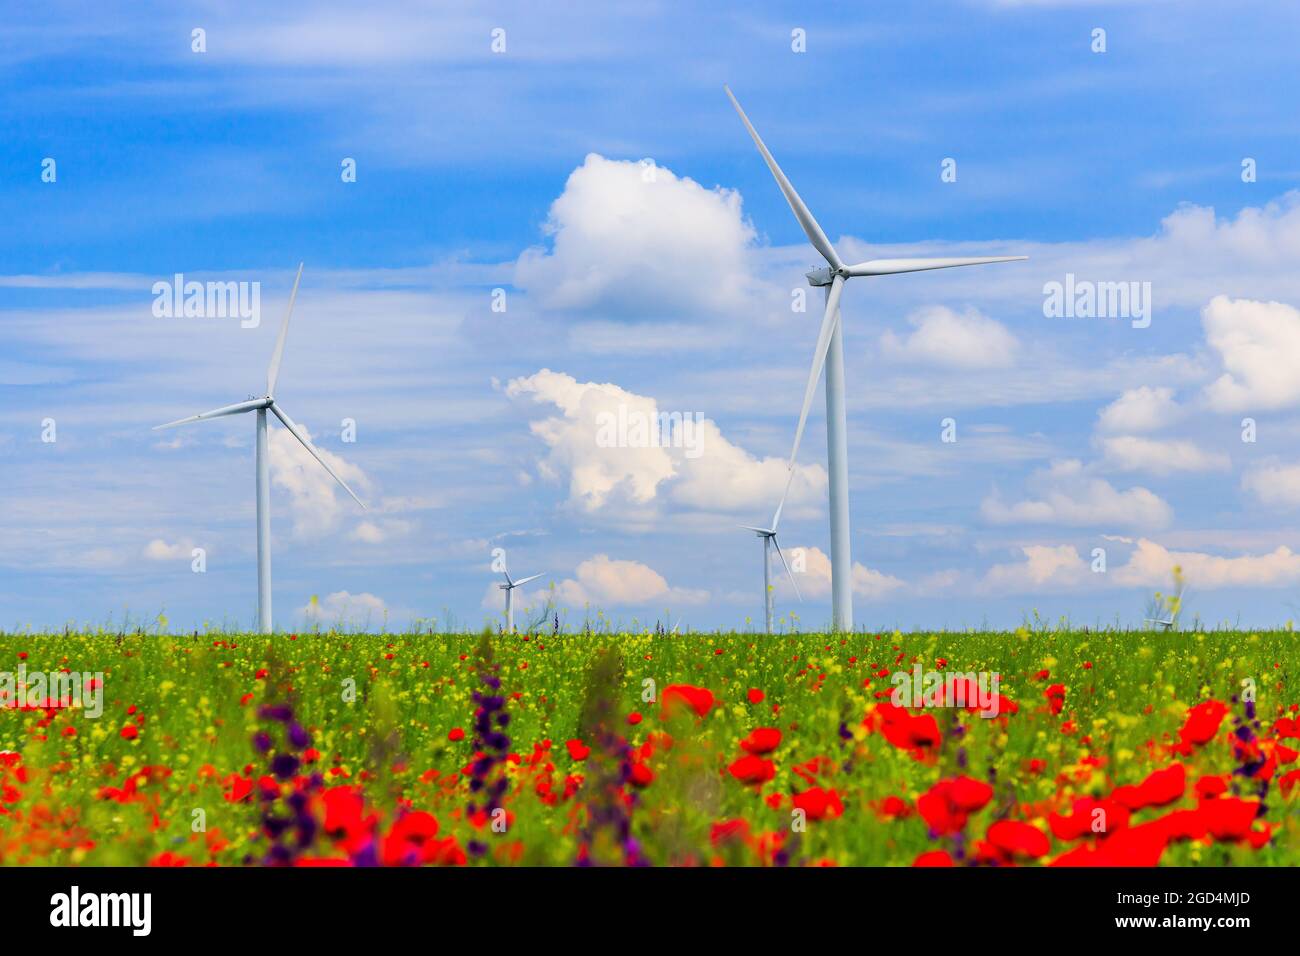 Éoliennes (source d'énergie renouvelable) avec champ agricole et fleurs sauvages au premier plan. Banque D'Images